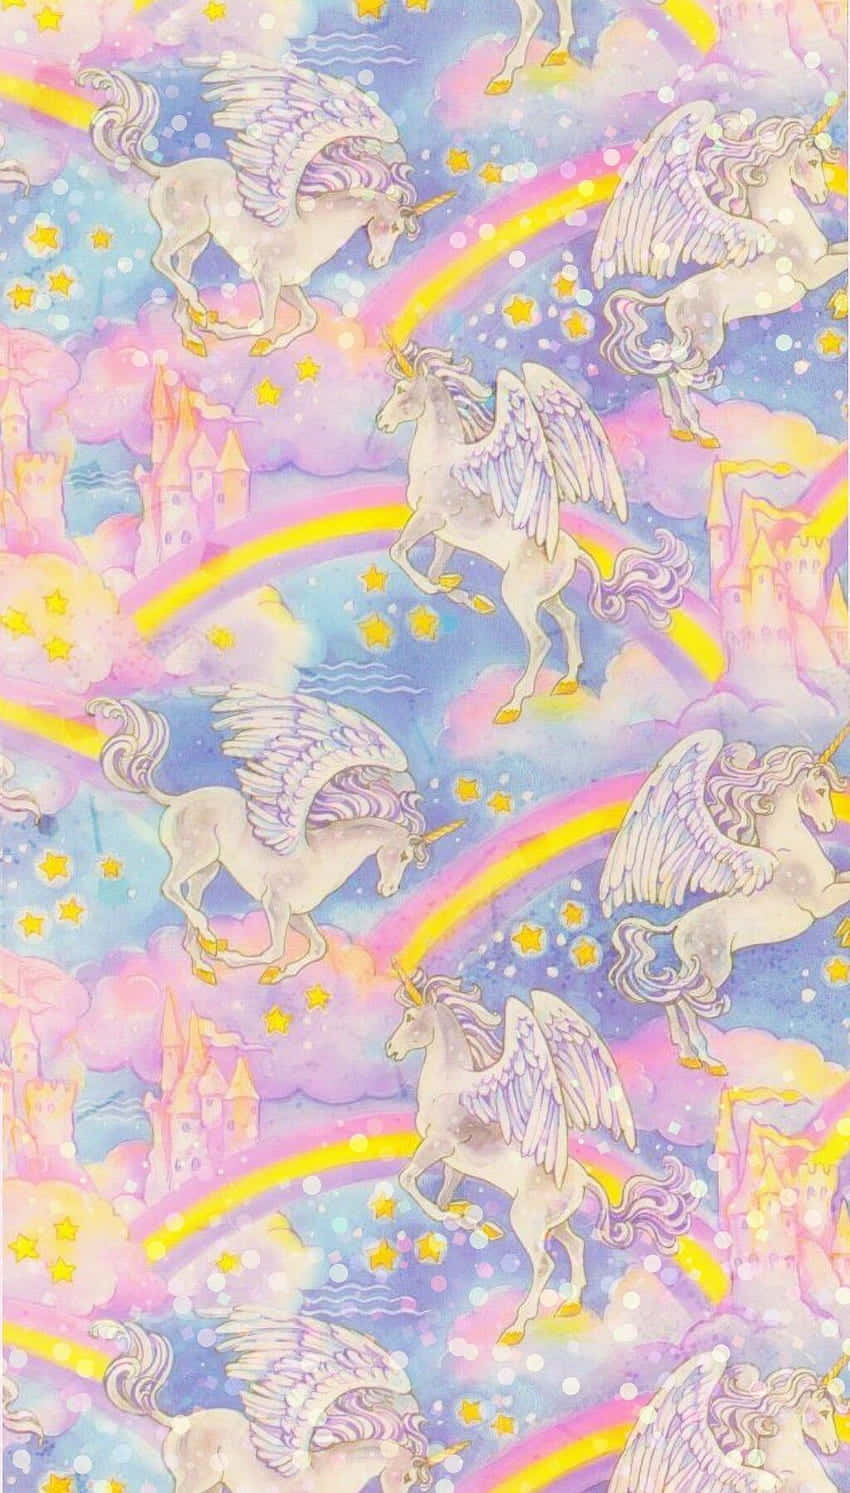 Magiske unikorner fra verden af Lisa Frank! Wallpaper